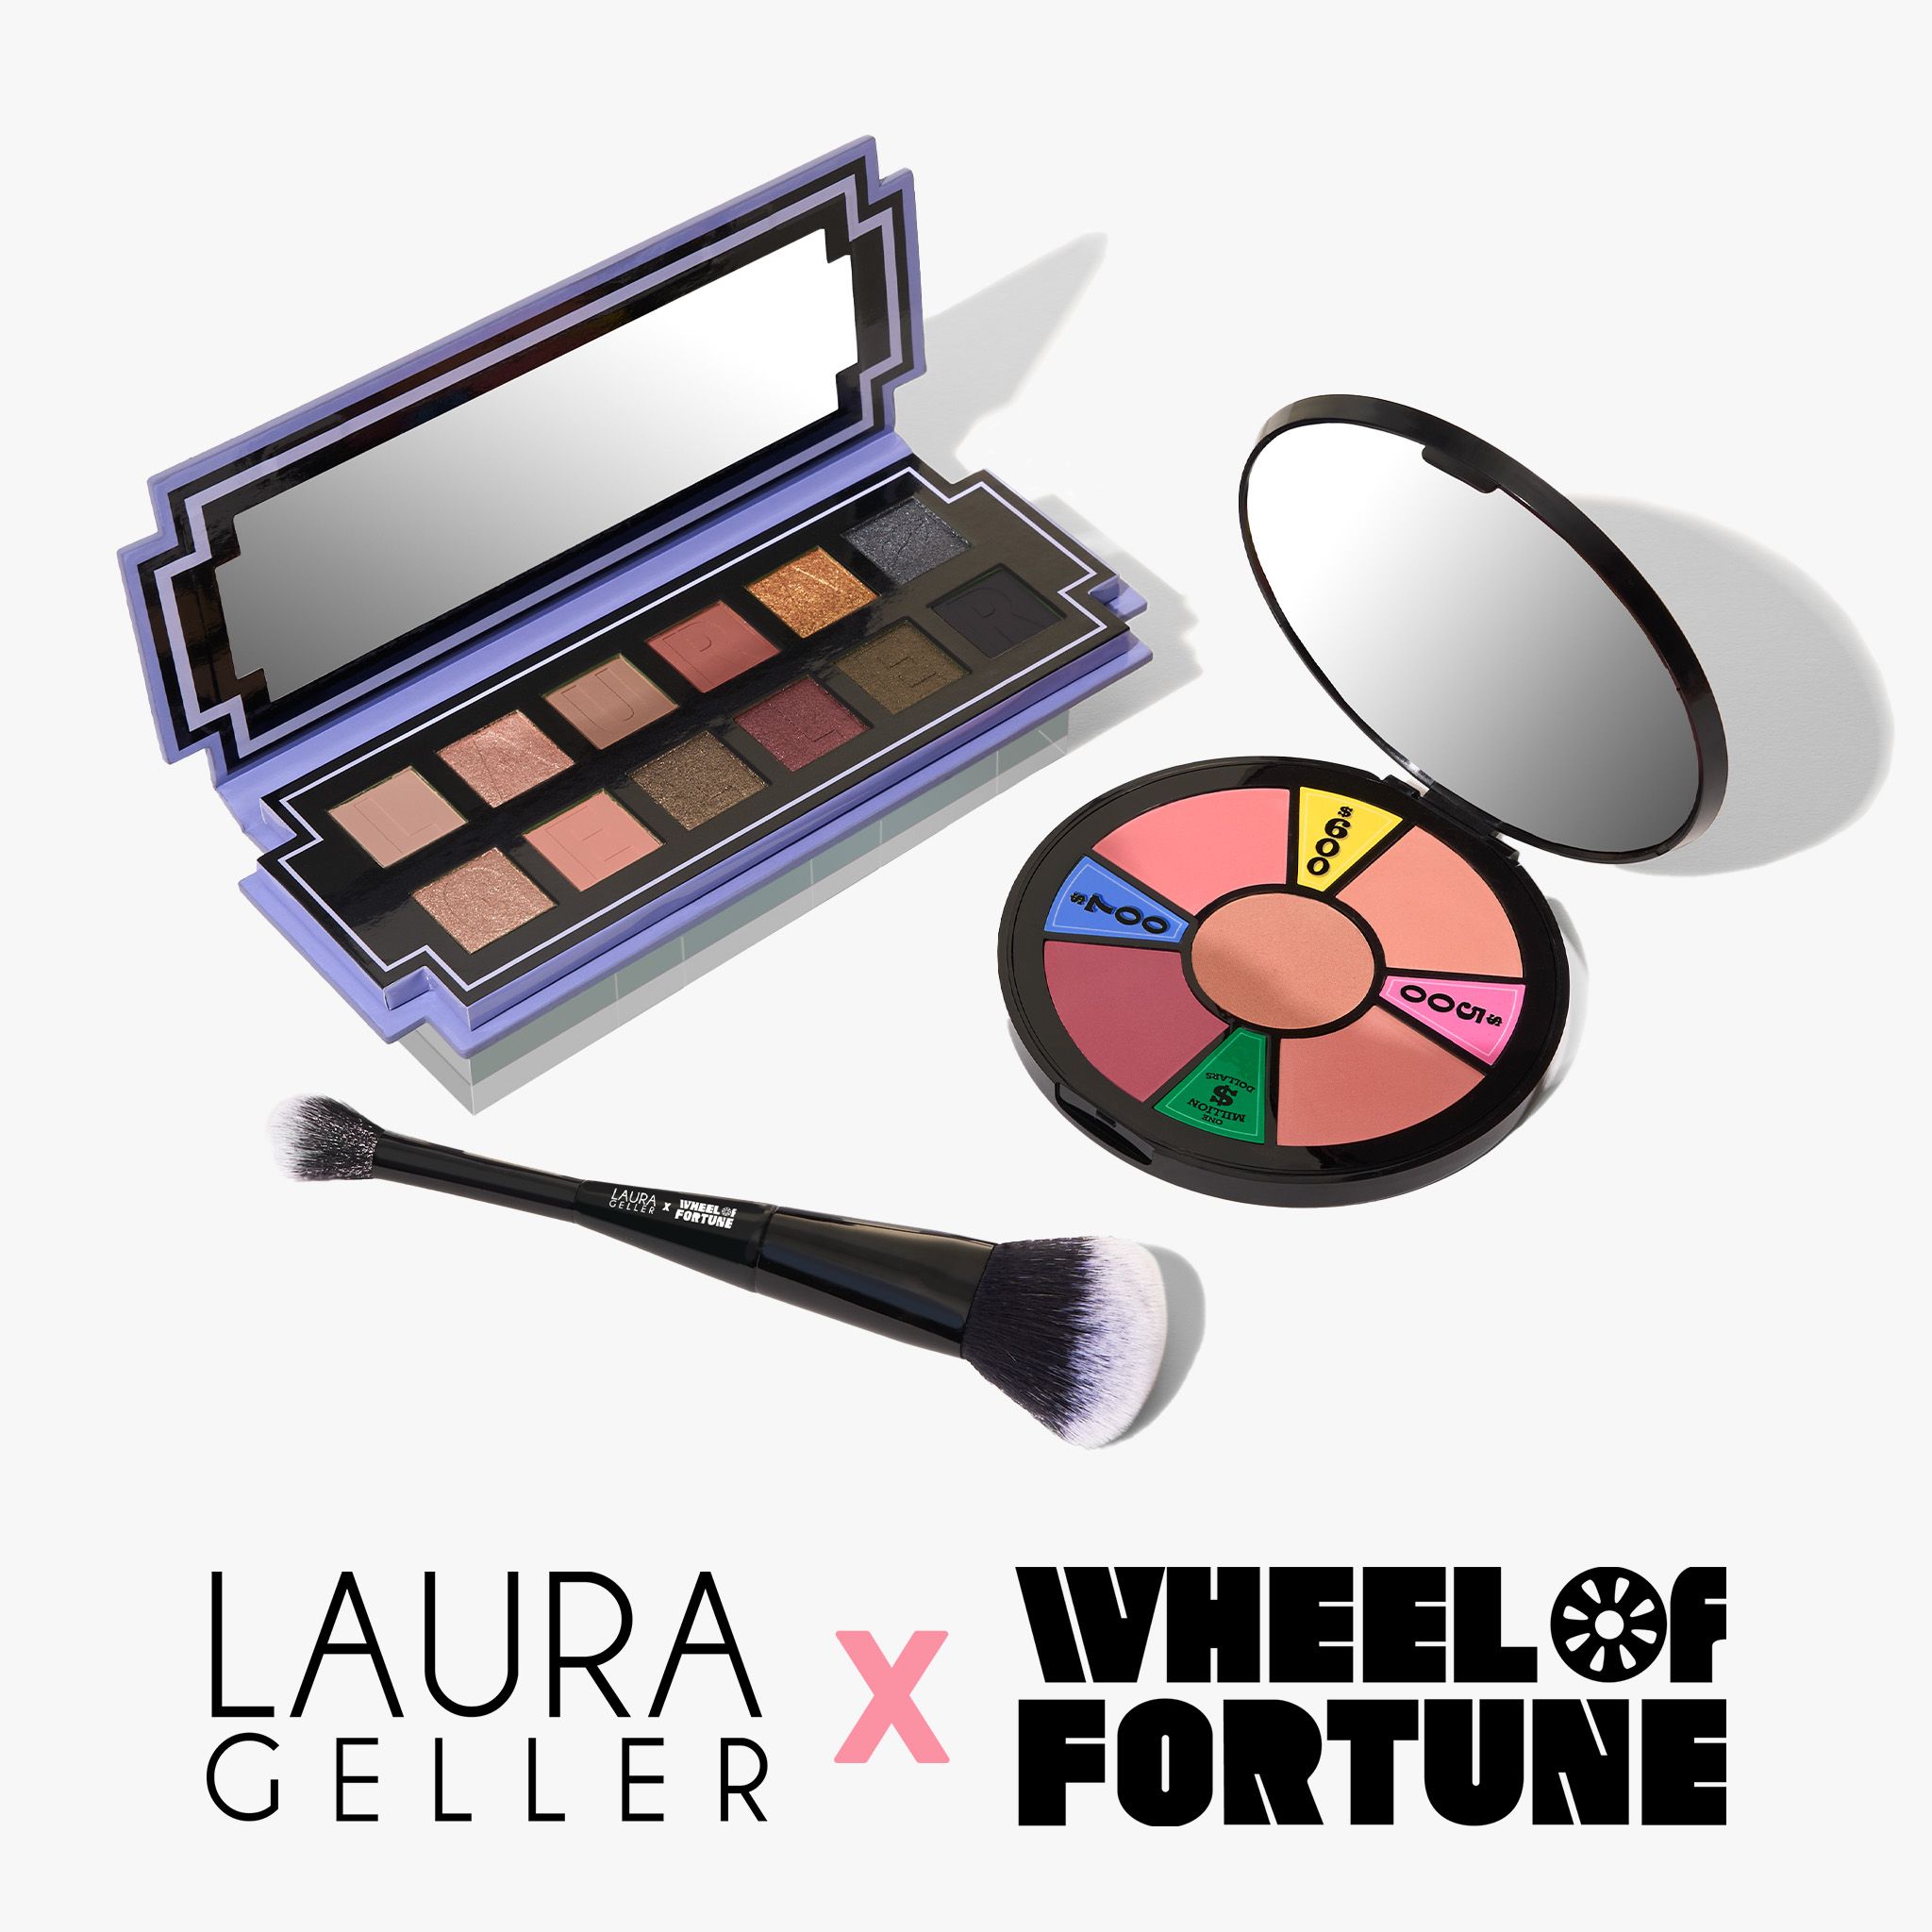 Laura Geller X Wheel of Fortune | Laura Geller